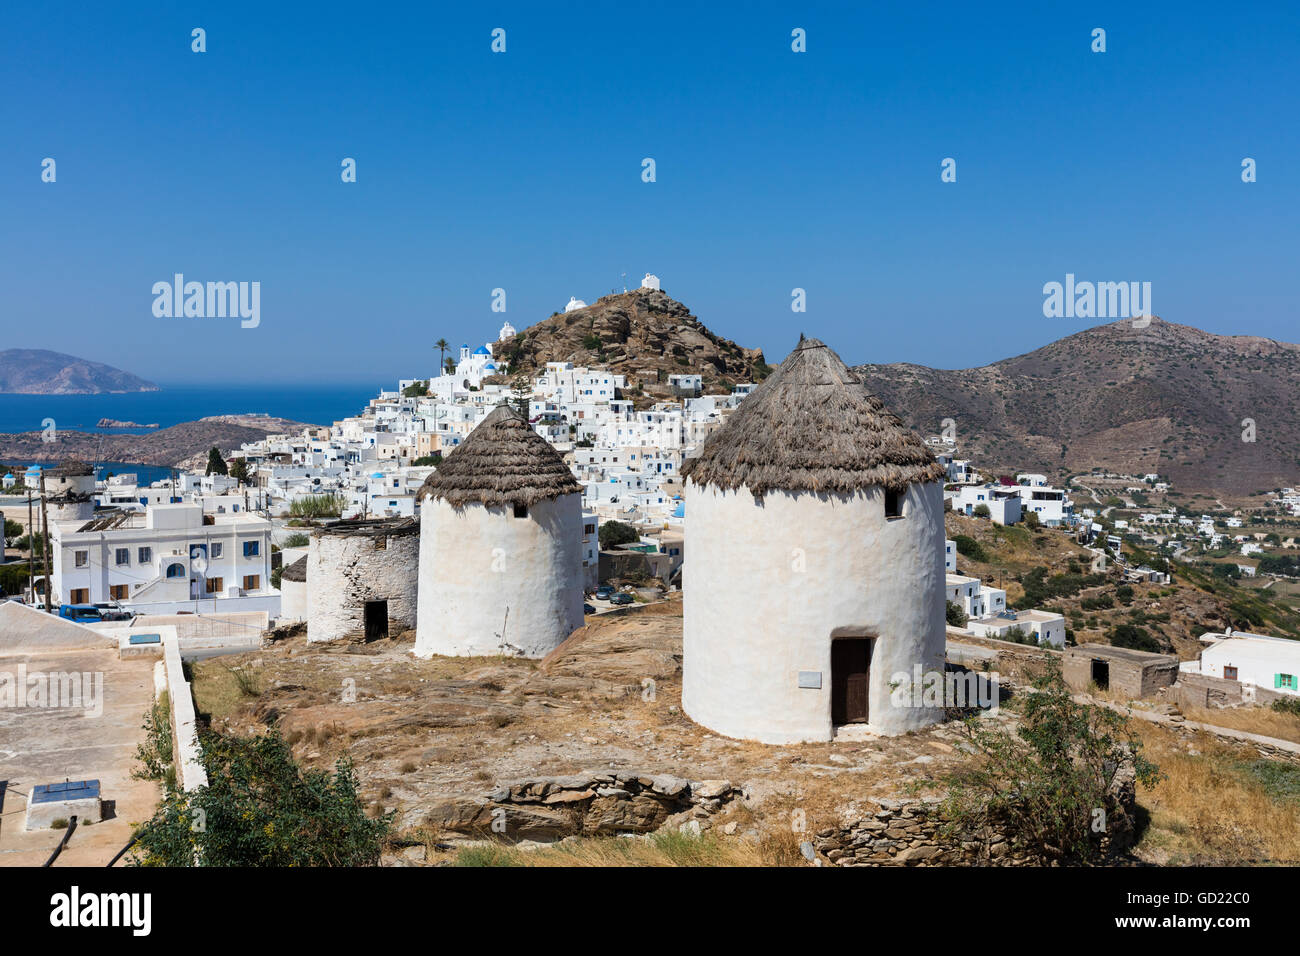 Un village typiquement grec perché sur un rocher avec des maisons blanches et bleues et de pittoresques moulins à vent, Ios, Cyclades, îles grecques, Grèce Banque D'Images